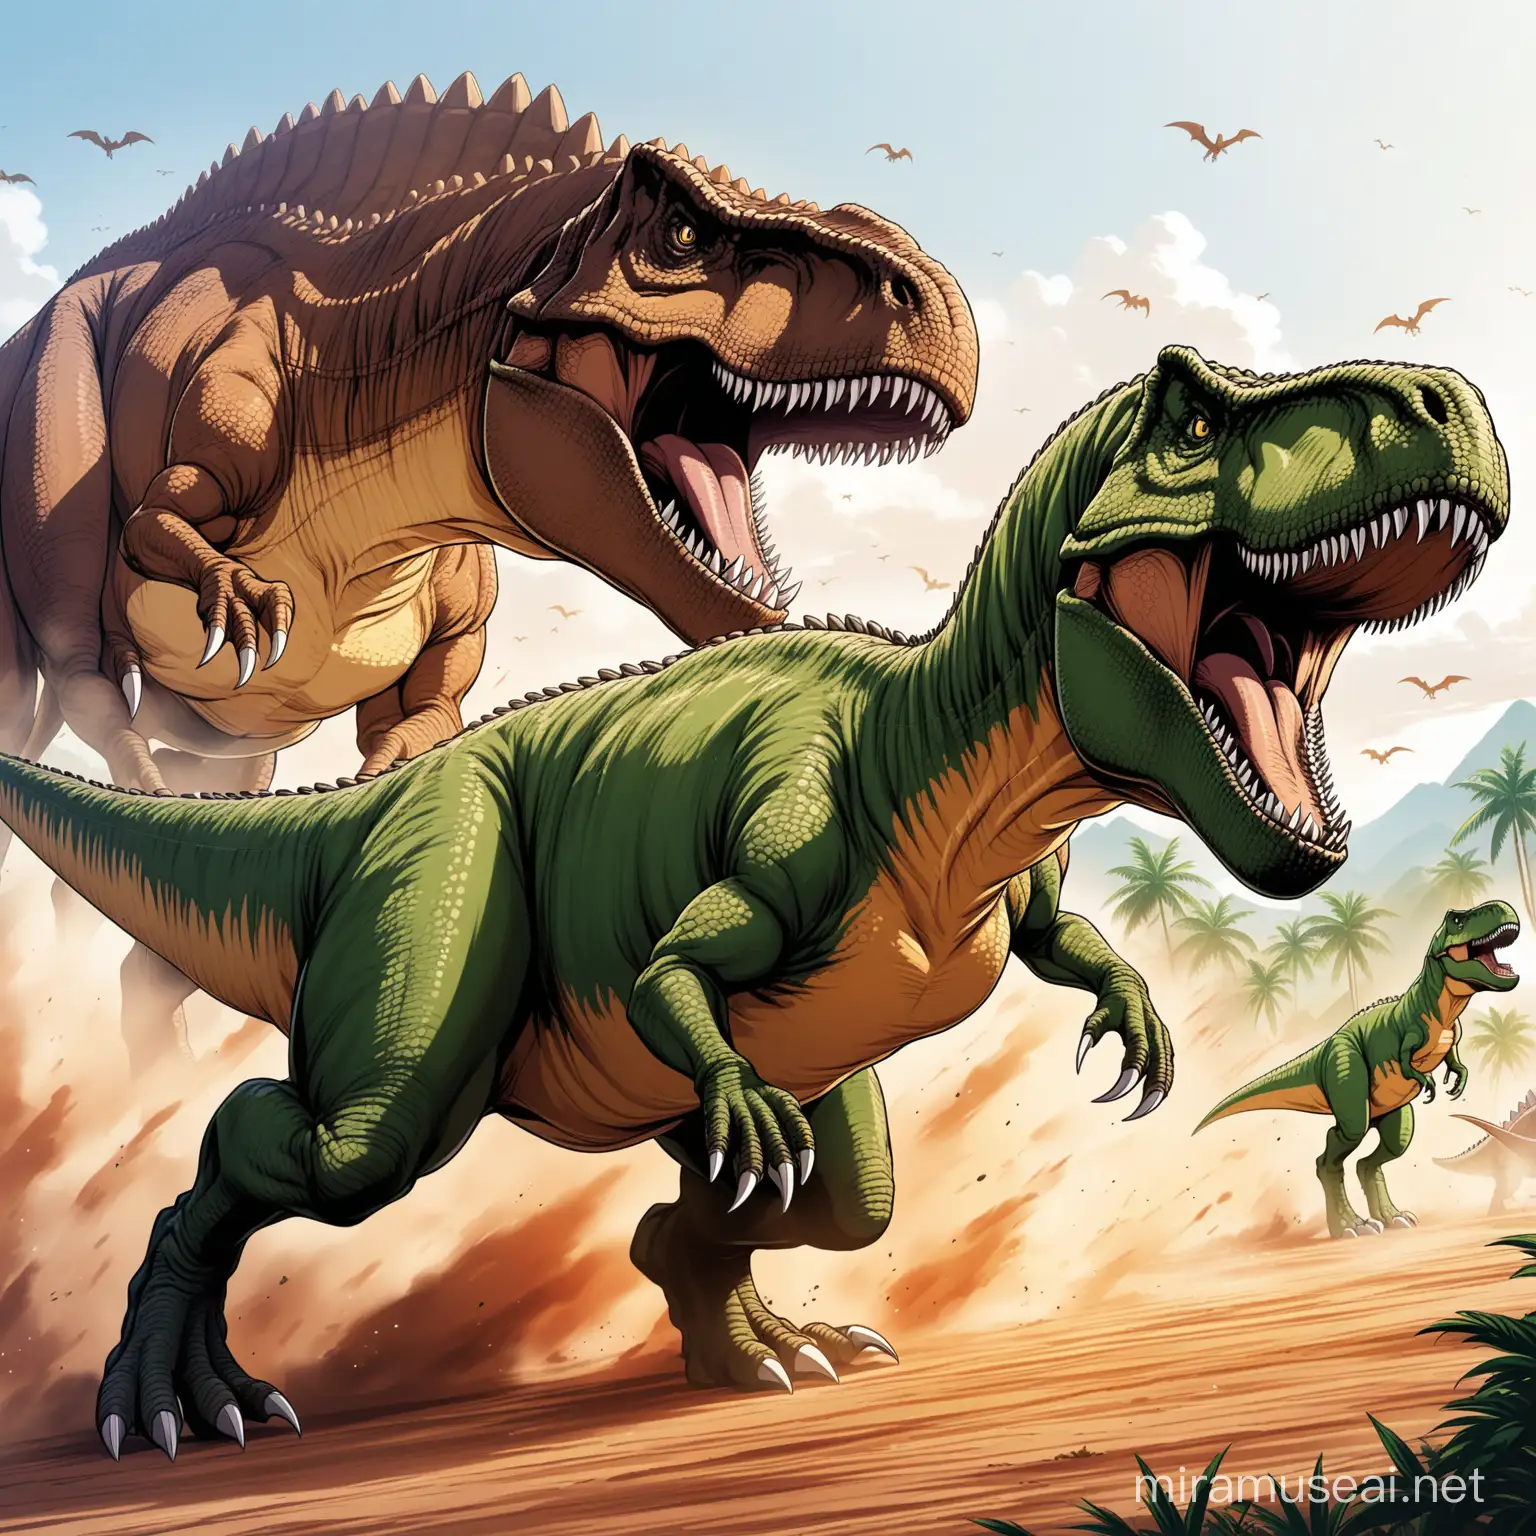 Anime Style Tyrannosaurus Rex Fierce Battle Scene